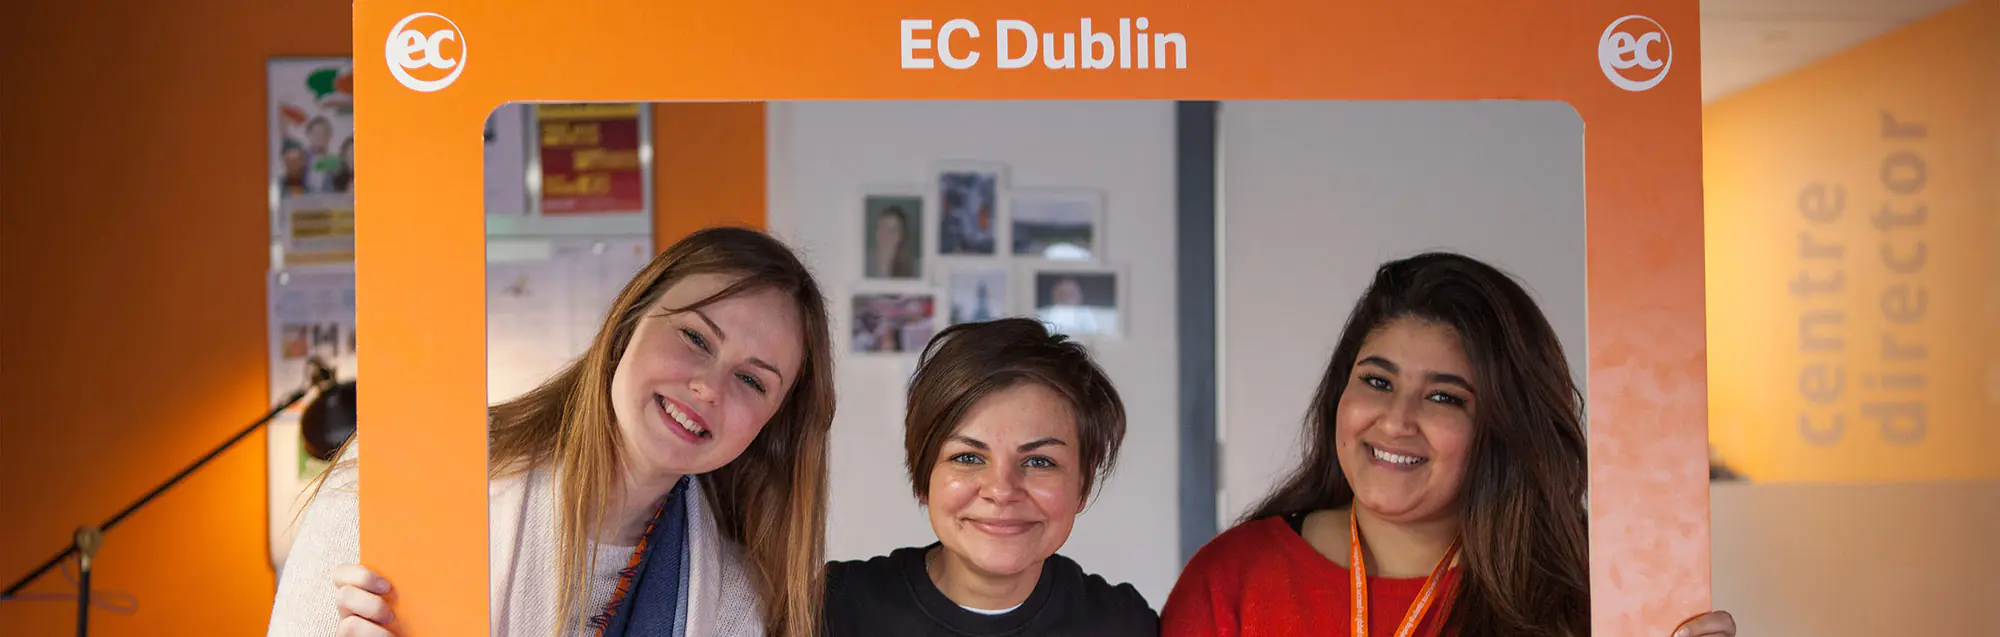 EC Dublin 30plus